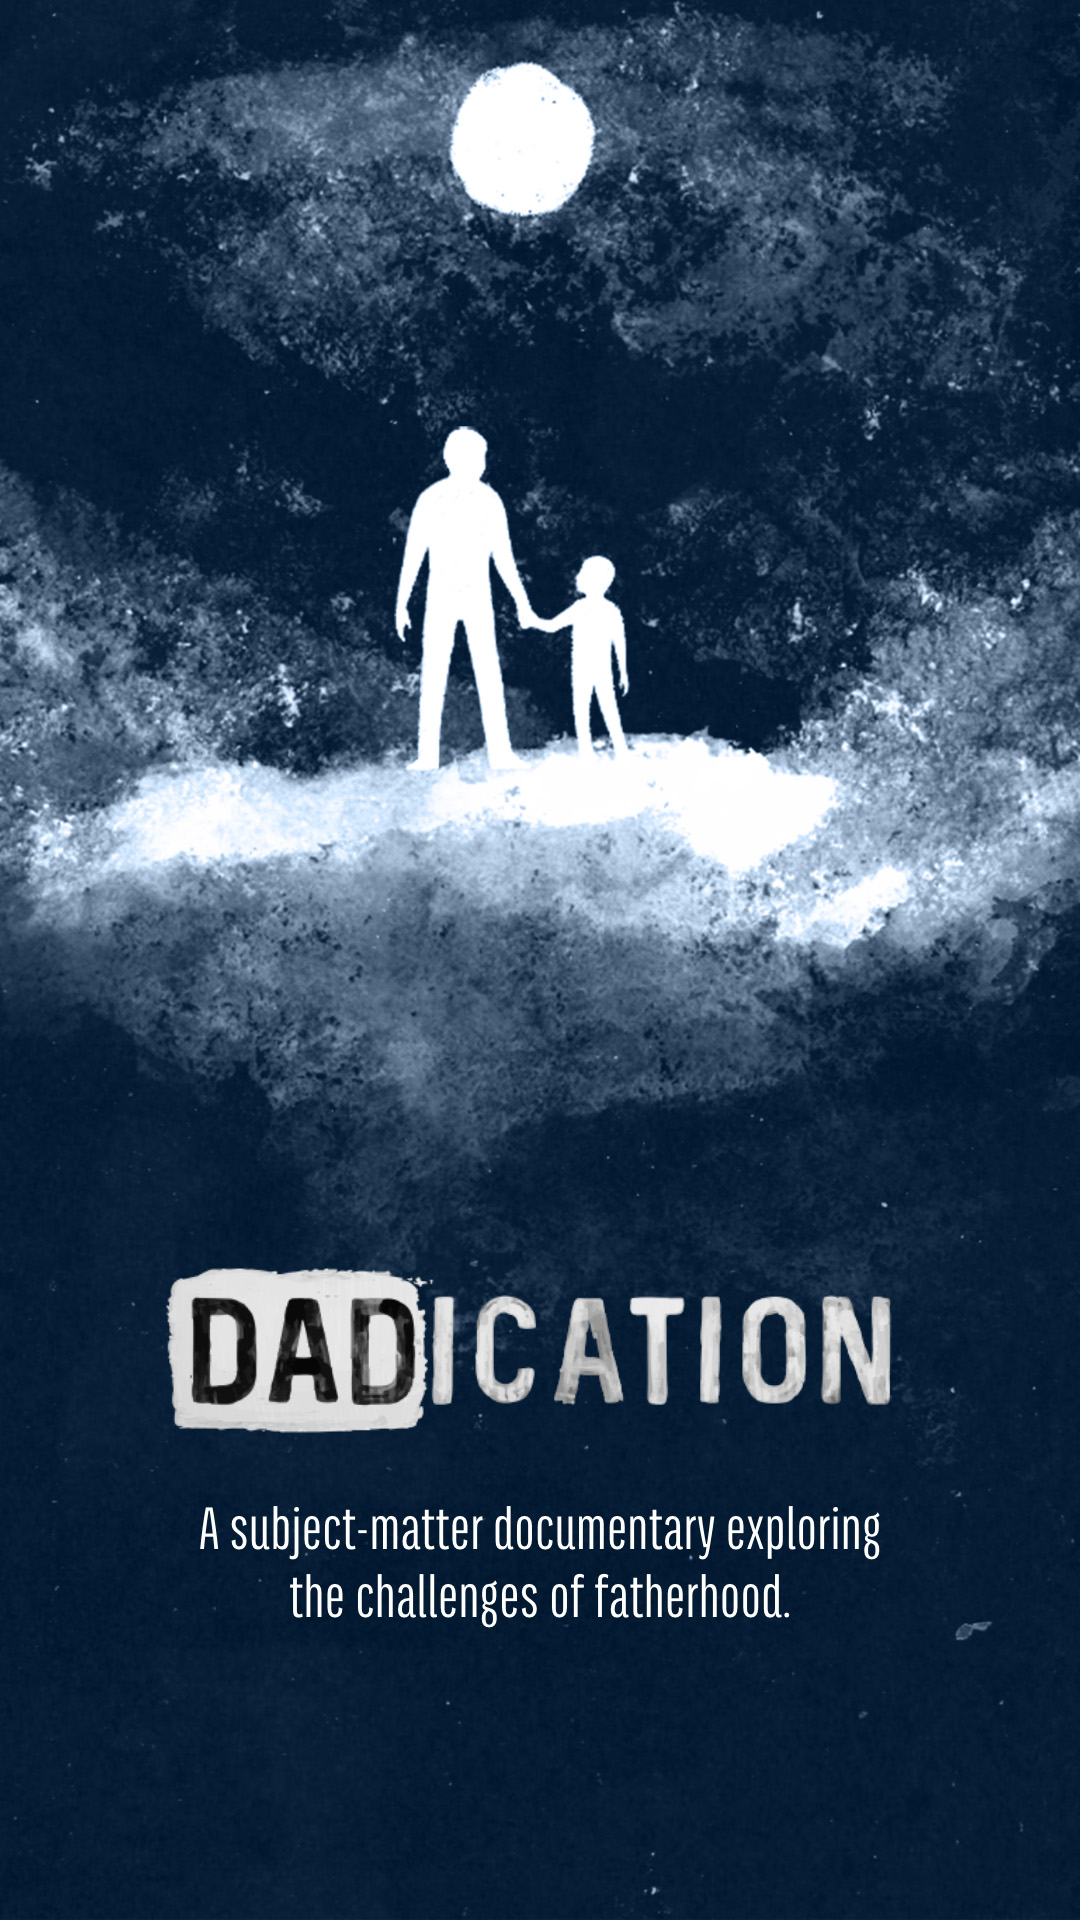 Dadication poster